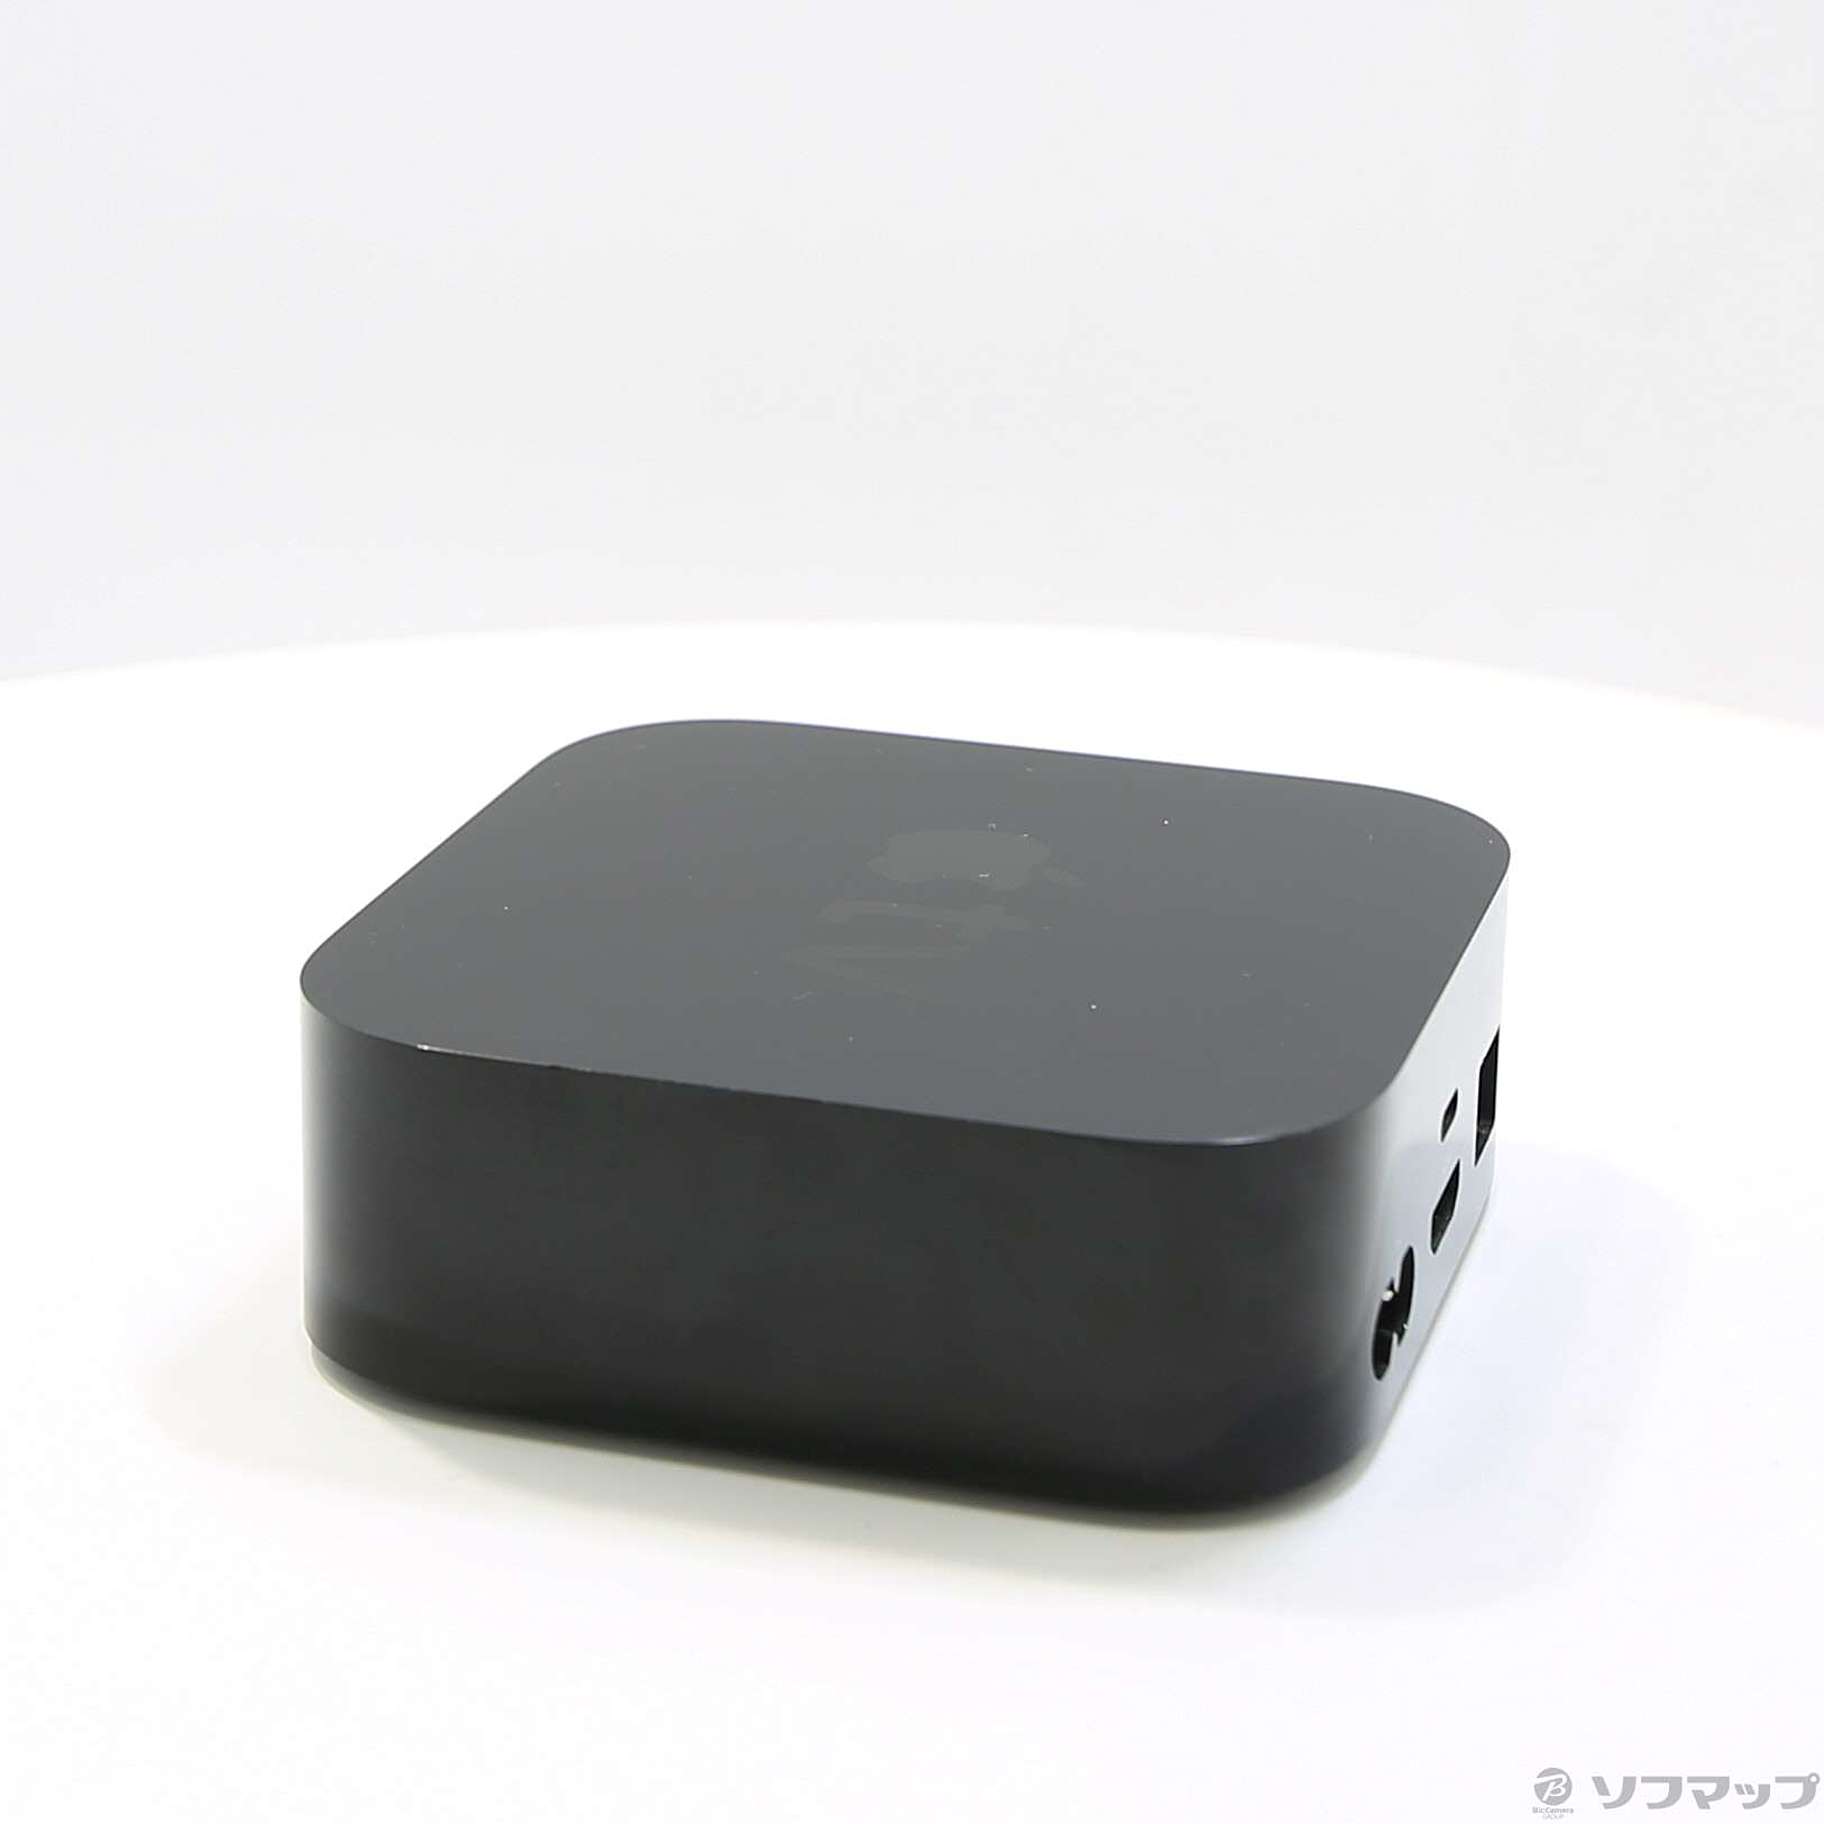 【新品未開封】Apple TV 64GB 第4世代 MLNC2J/A アップル